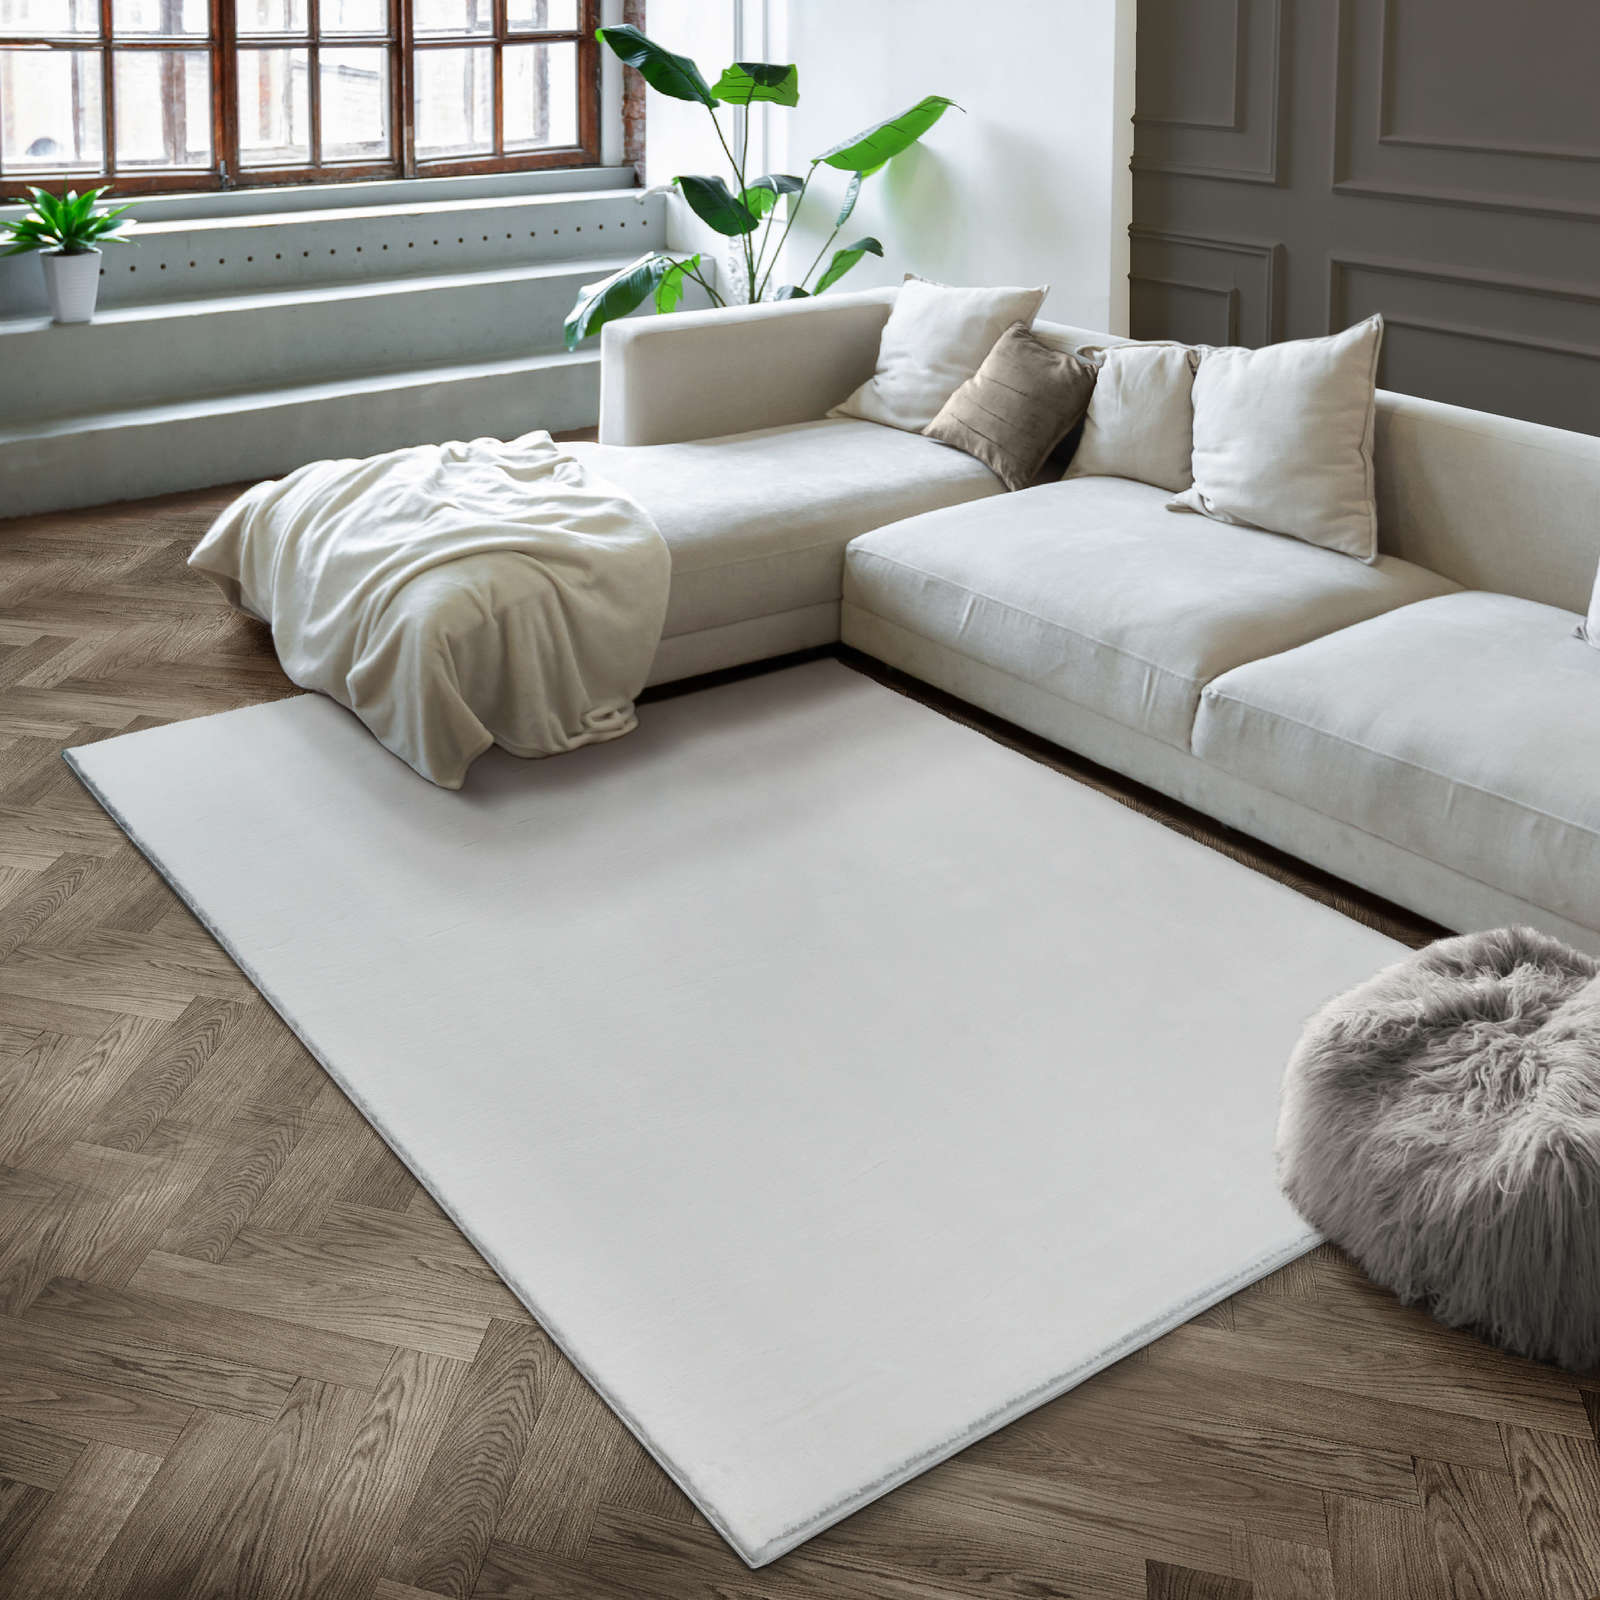             Flauschiger Hochflor Teppich in angenehmen Creme – 230 x 160 cm
        